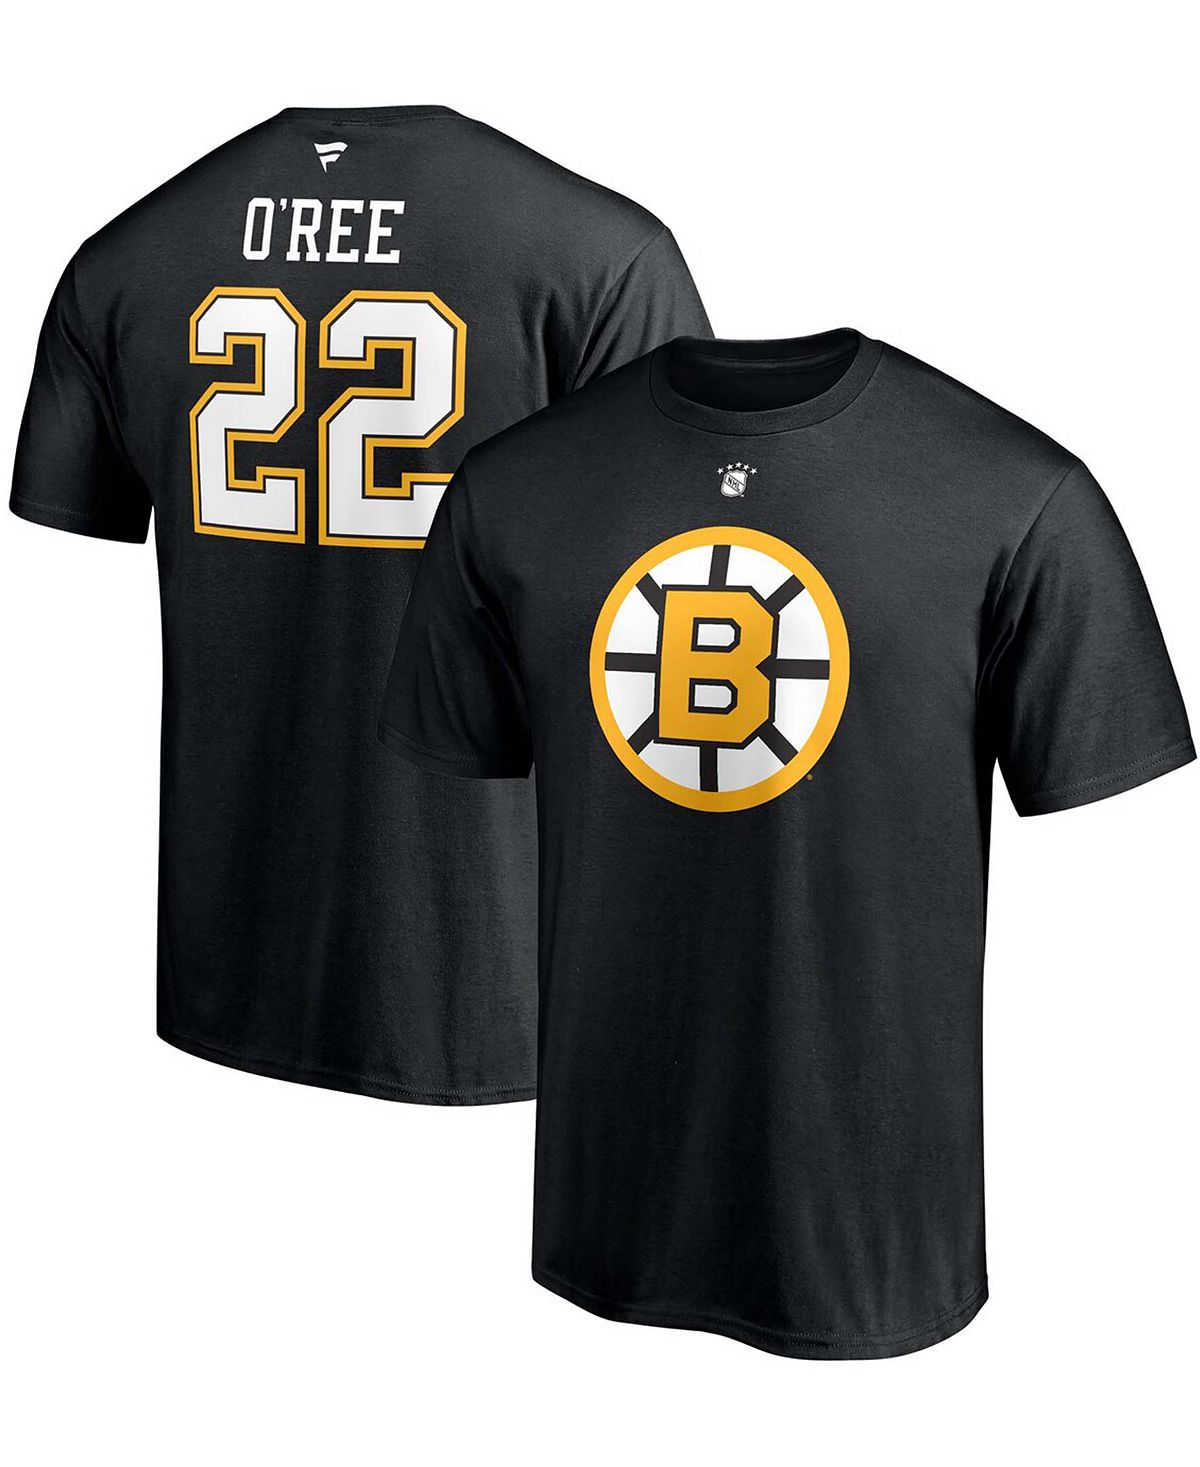 Мужская футболка willie o'ree black boston bruins authentic stack с именем и номером игрока на пенсии Fanatics, черный